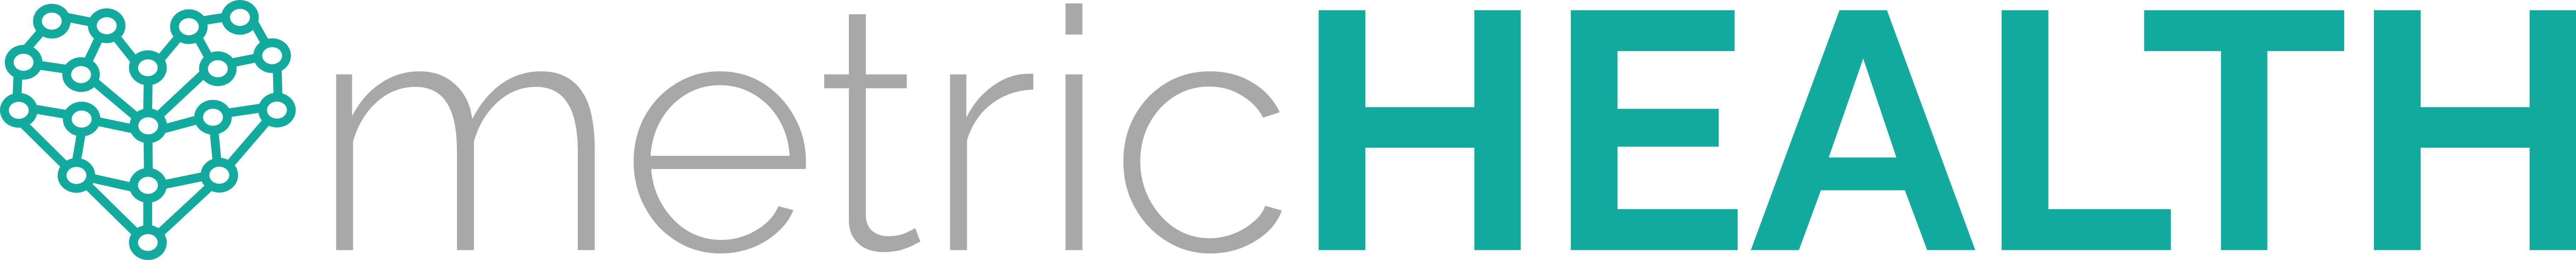 metricHEALTH-logo